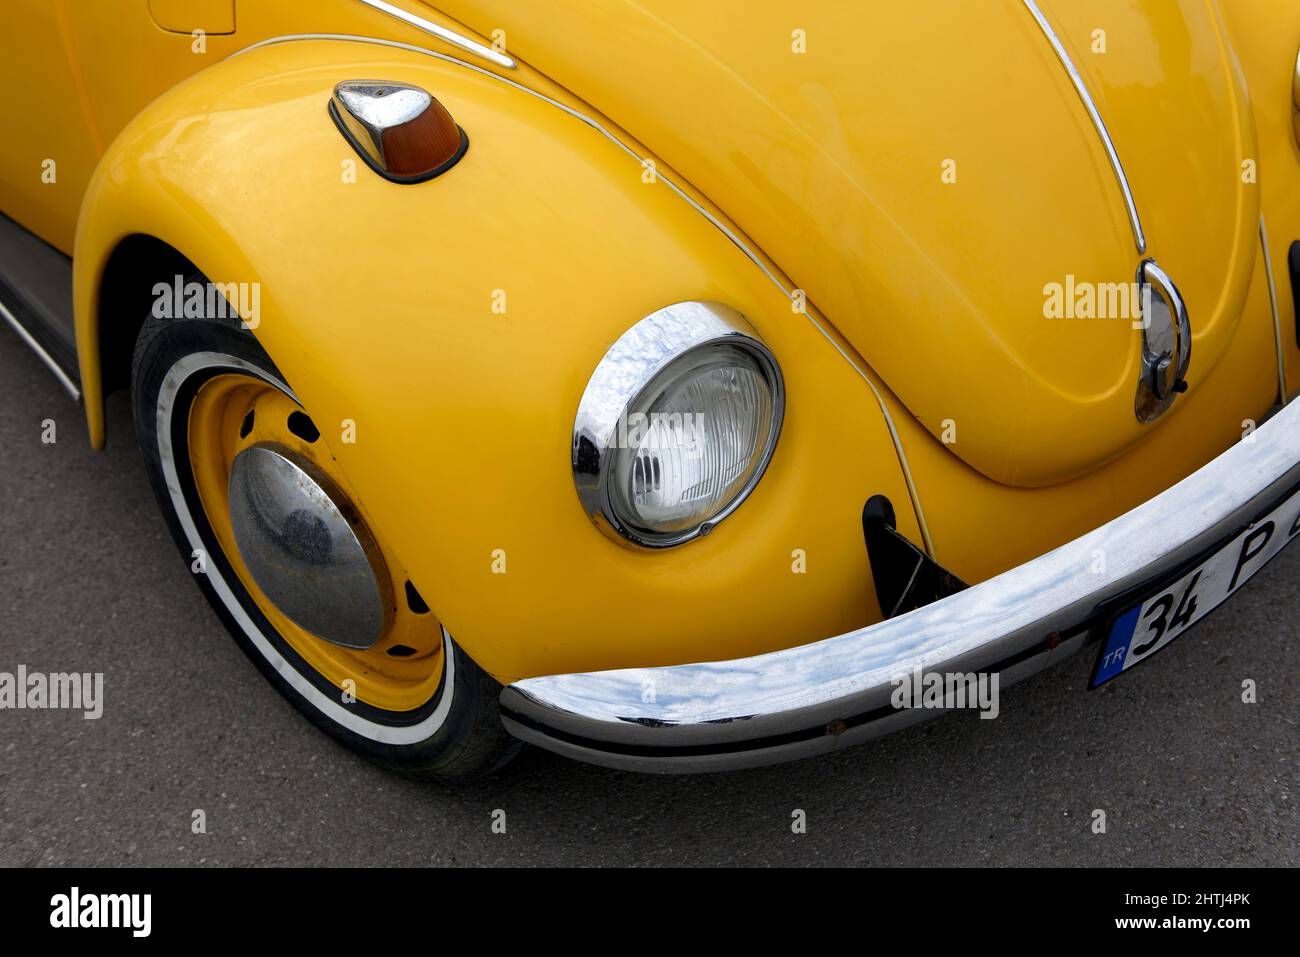 gelbes Auto, Käfer auf weiß, Hippie-Auto im retro-Stil Stockfotografie -  Alamy